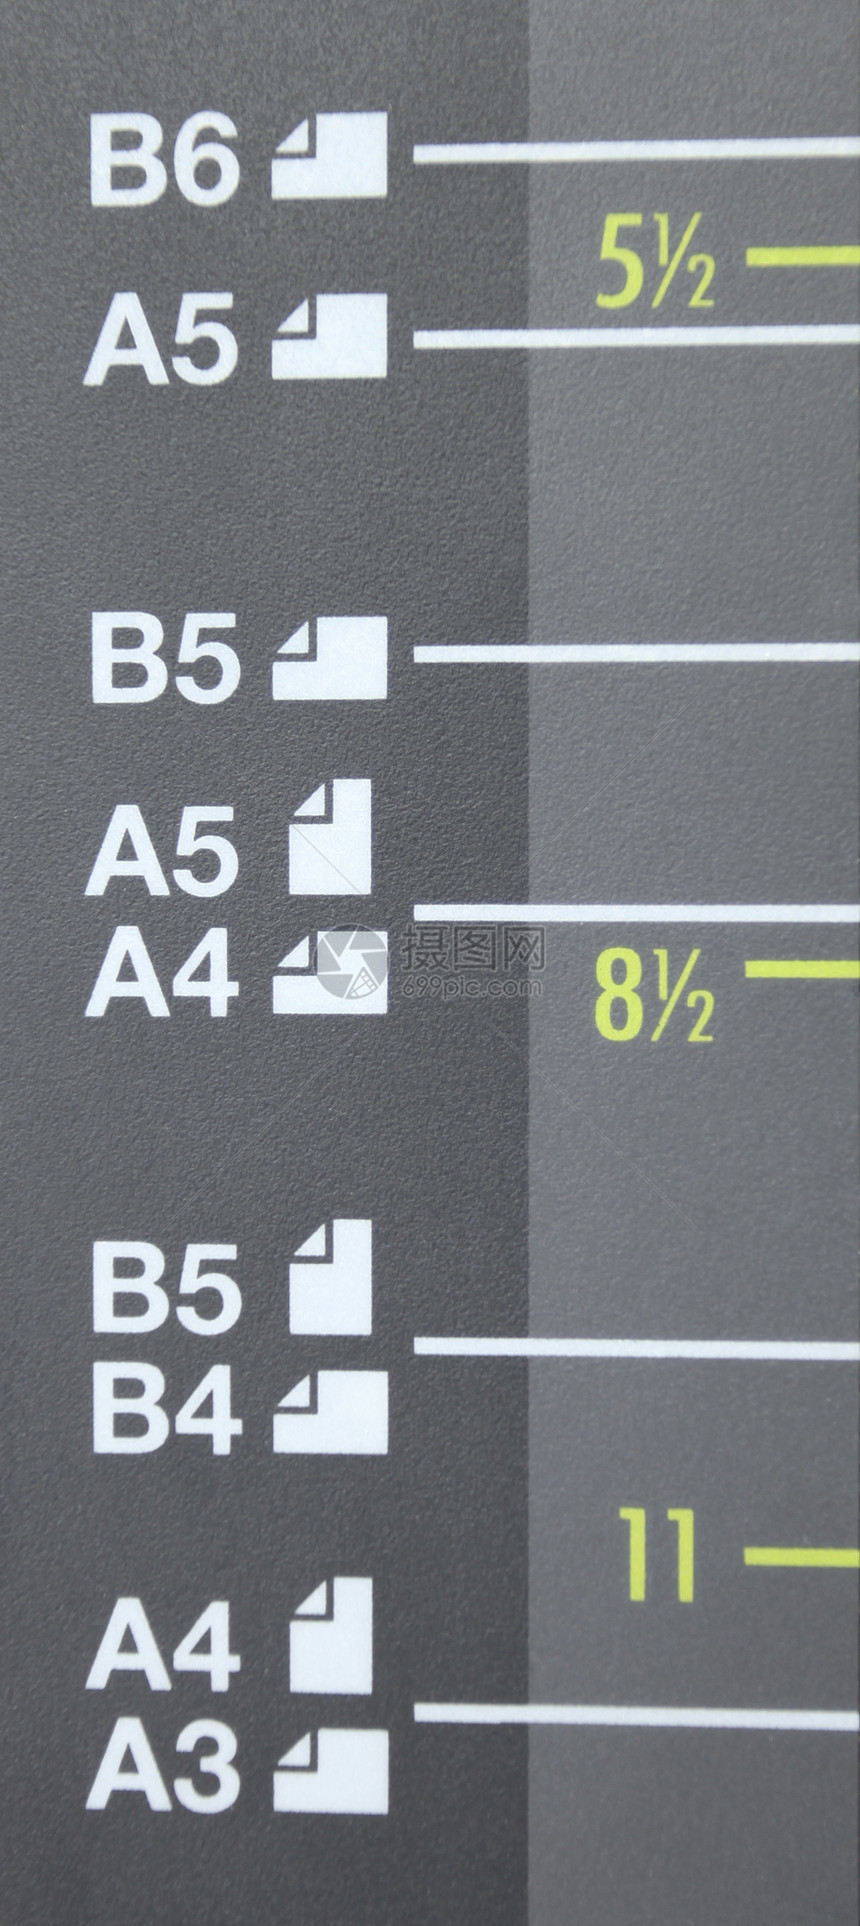 激光复印机上的纸张尺寸 A3 A4 A5 B4 B5 B6复印件电子产品印刷白色办公室机器打印机技术电子容量图片